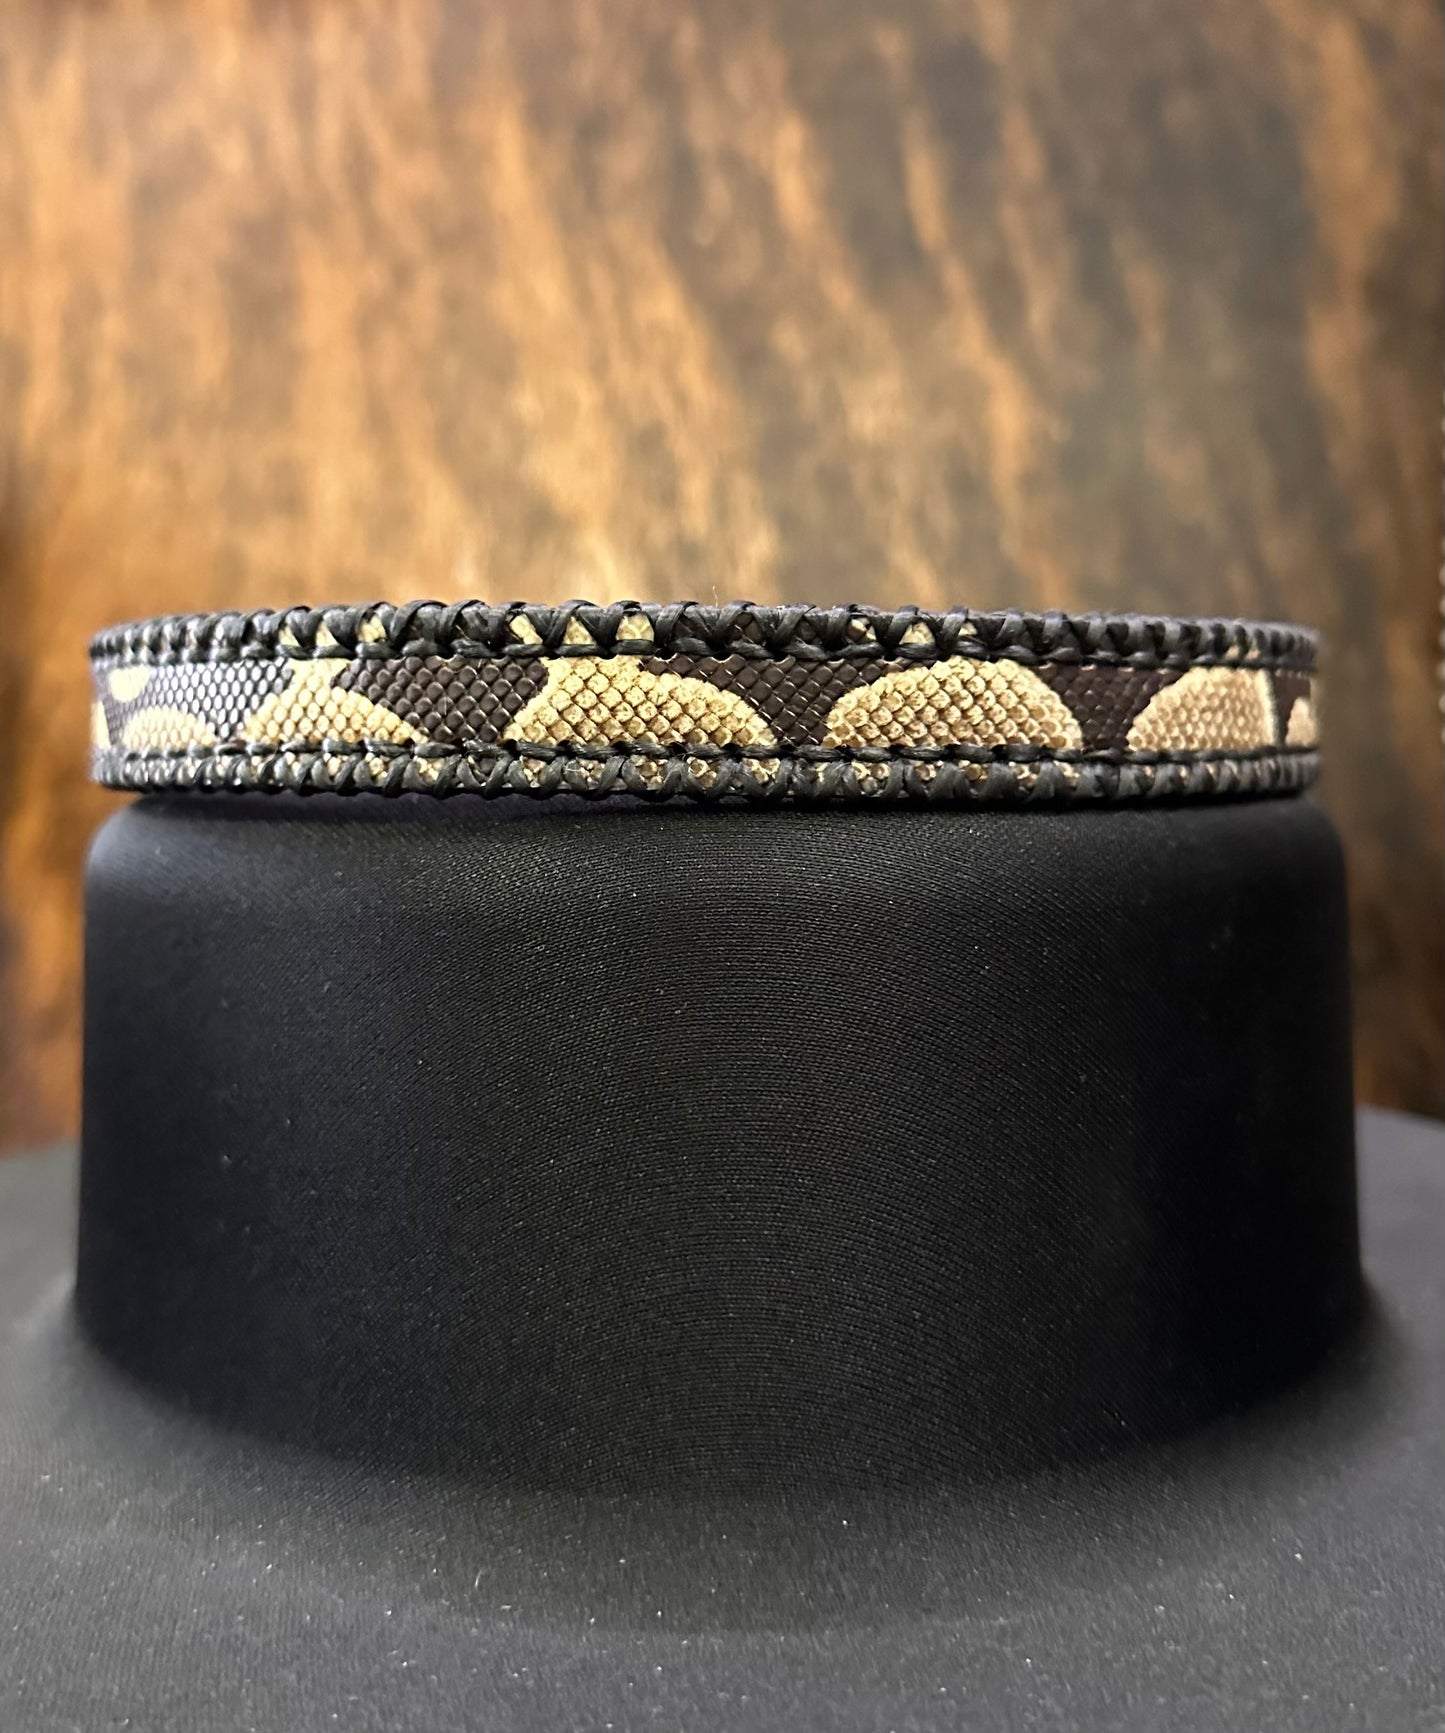 Hallett Peak Antique Python Skin Hatband